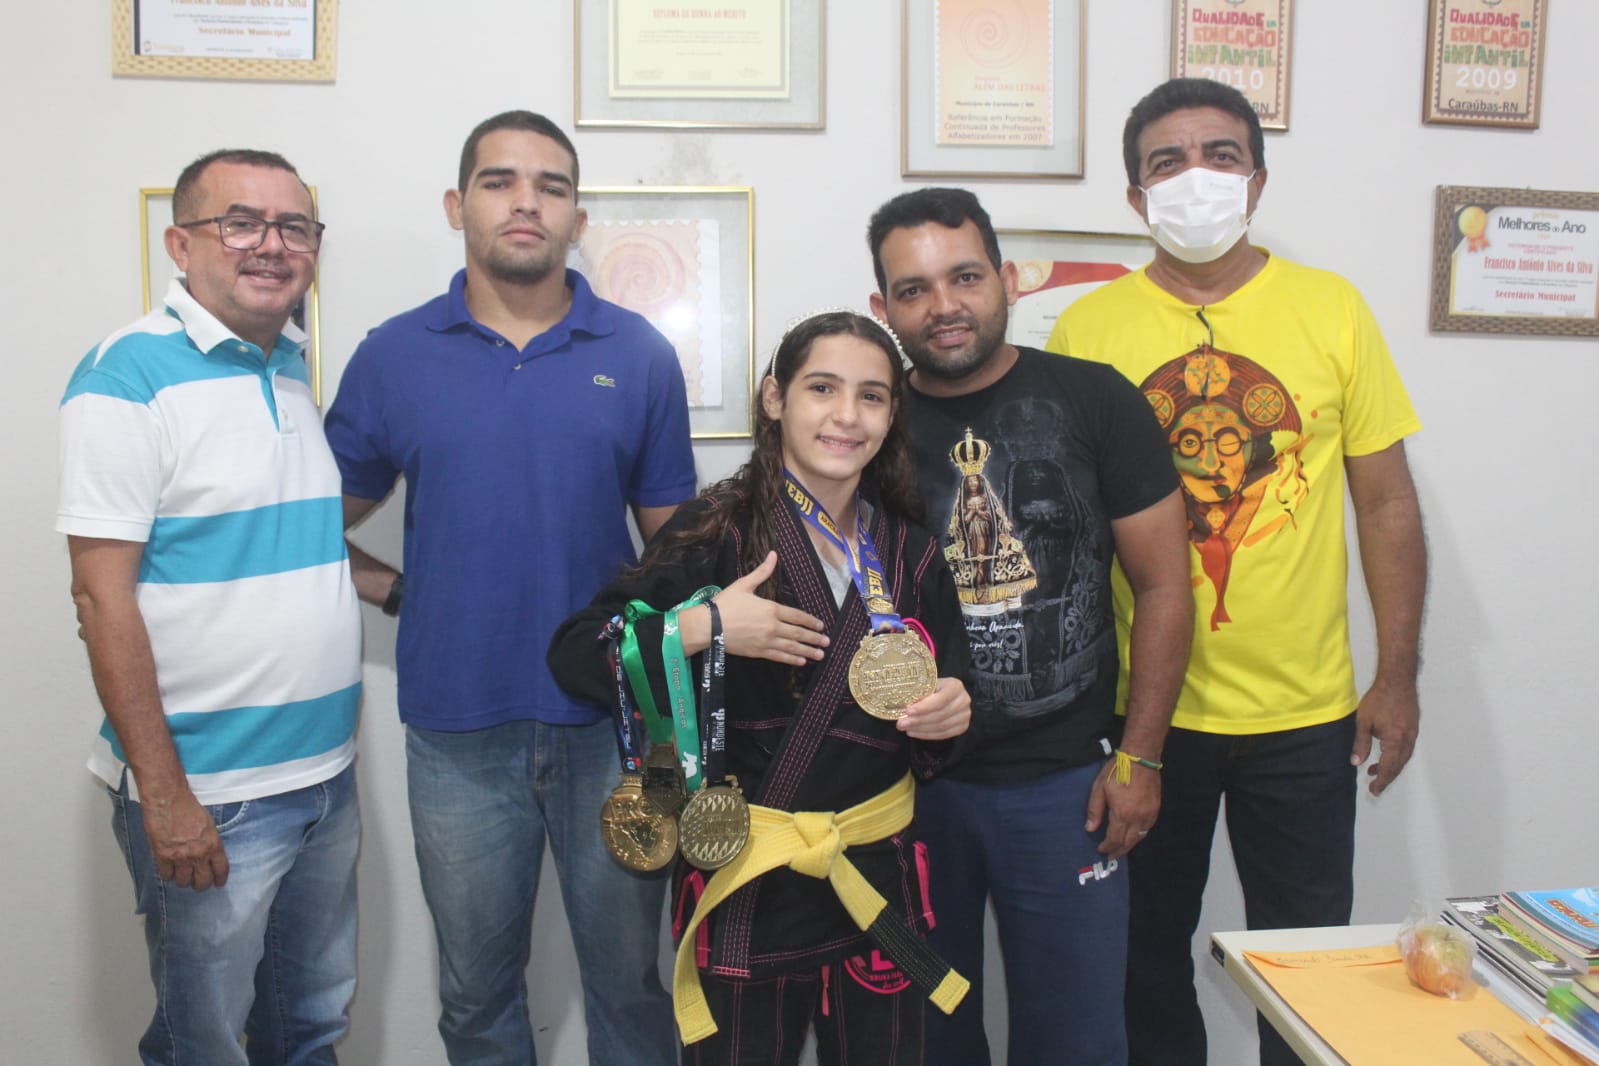 Adolescente caraubense é destaque no jiu-jitsu com apoio da Prefeitura de Caraúbas